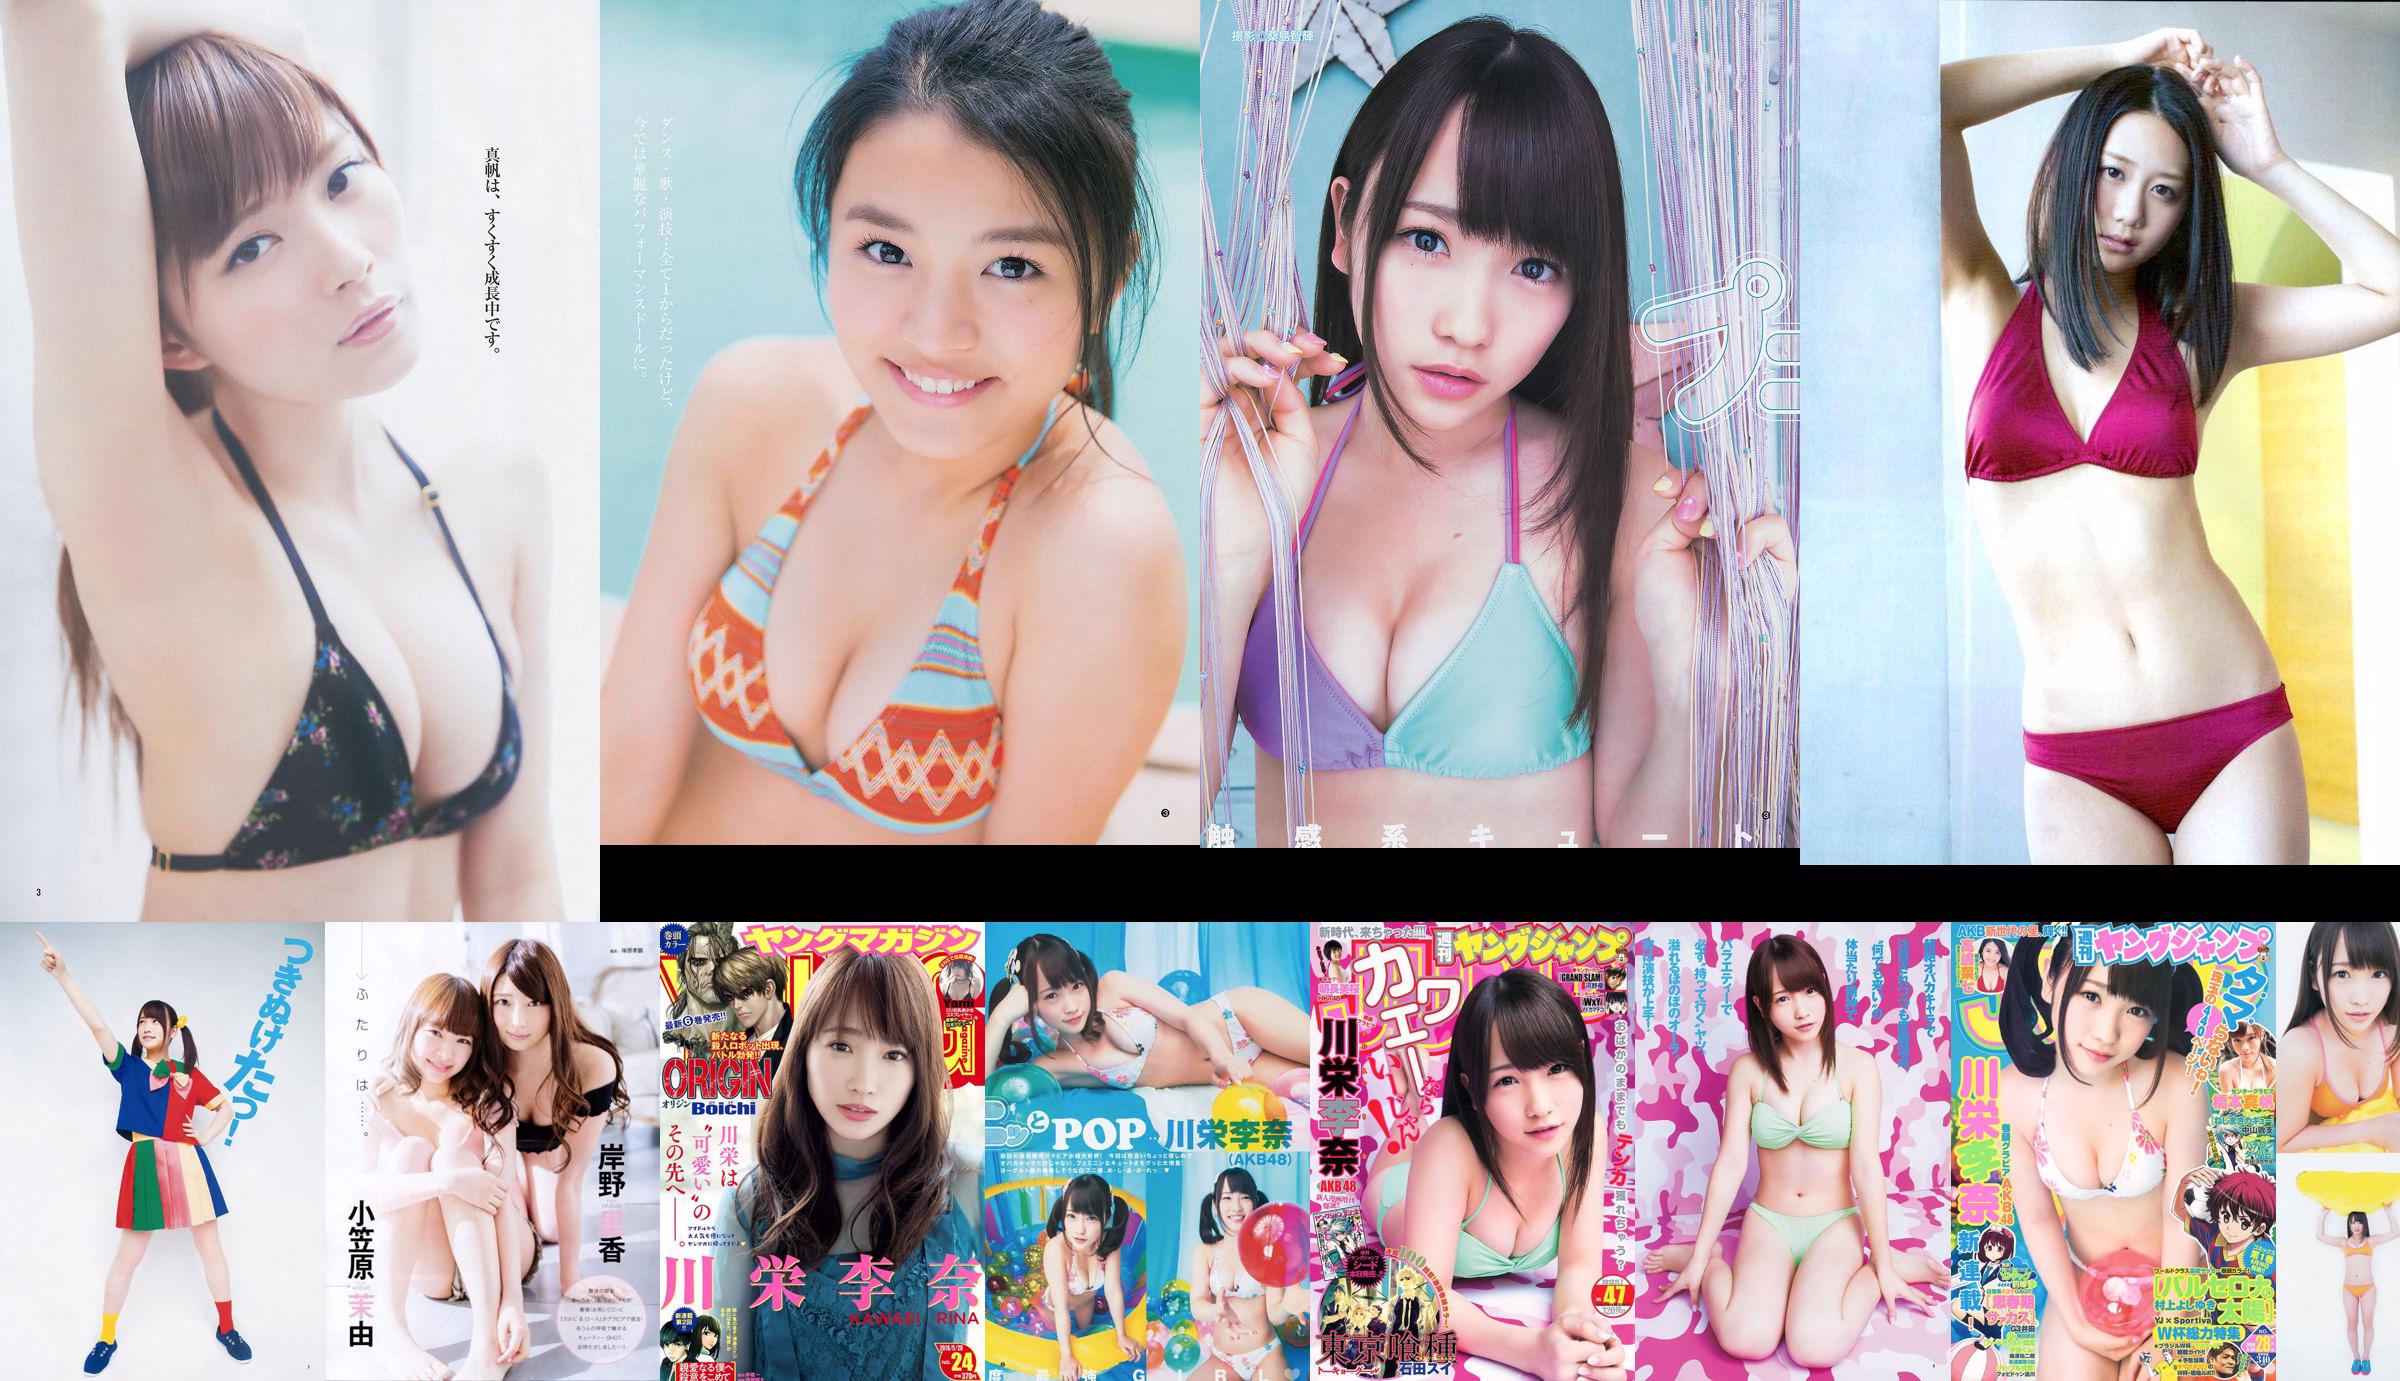 [ENTAME] Kawaei Rina Furuhata Naka e Kishino Rika junho de 2014 Photo Magazine No.783b71 Página 1